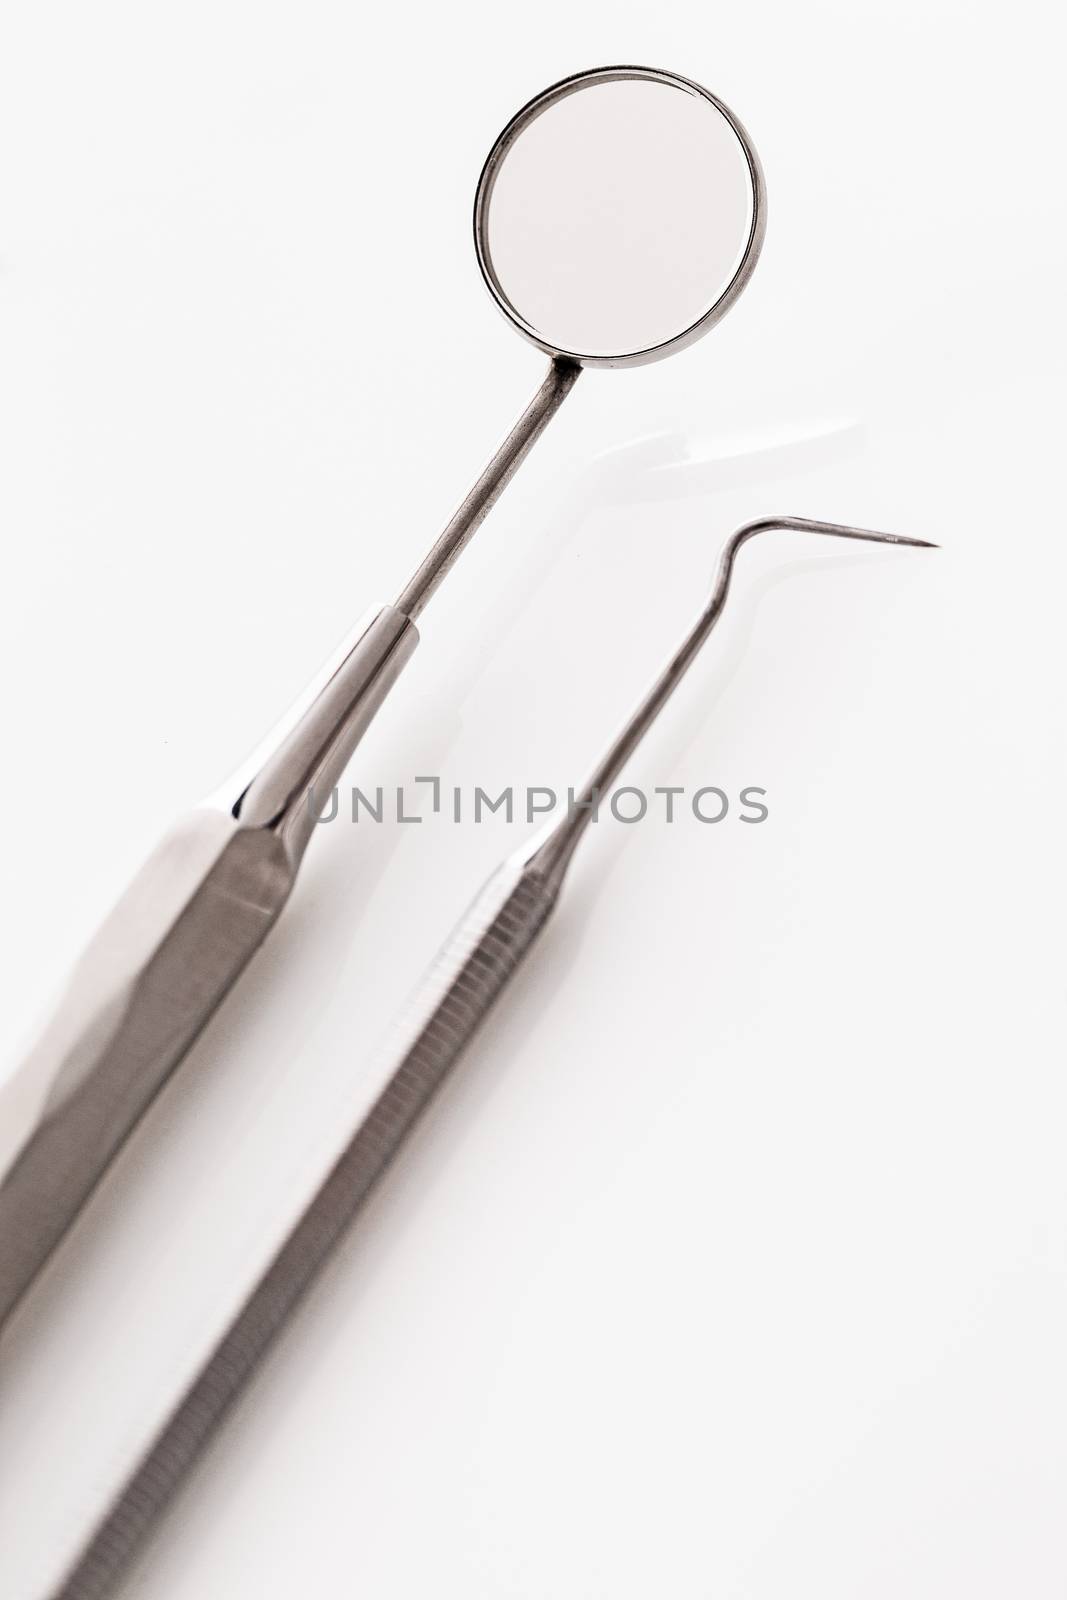 Dentists' instruments by rufatjumali